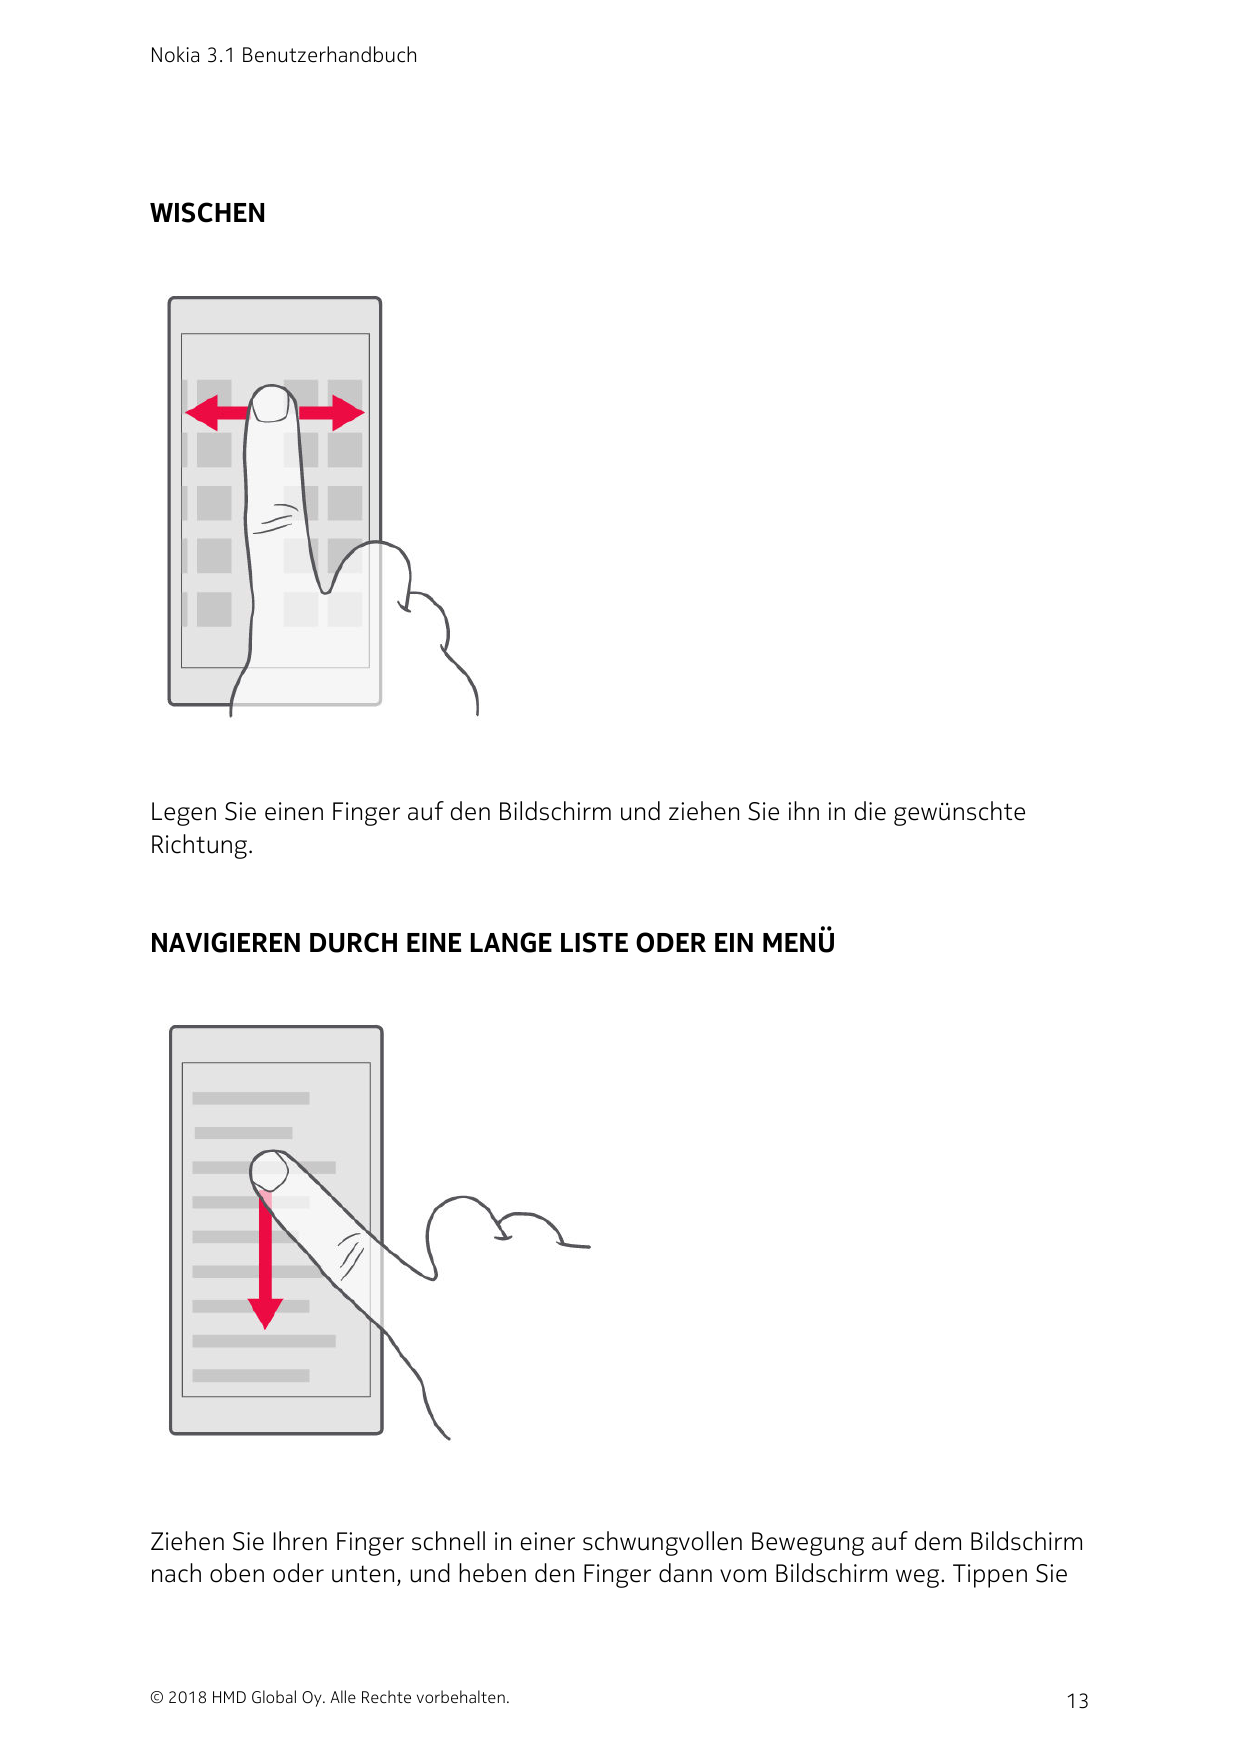 Nokia 3.1 BenutzerhandbuchWISCHENLegen Sie einen Finger auf den Bildschirm und ziehen Sie ihn in die gewünschteRichtung.NAVIGIER